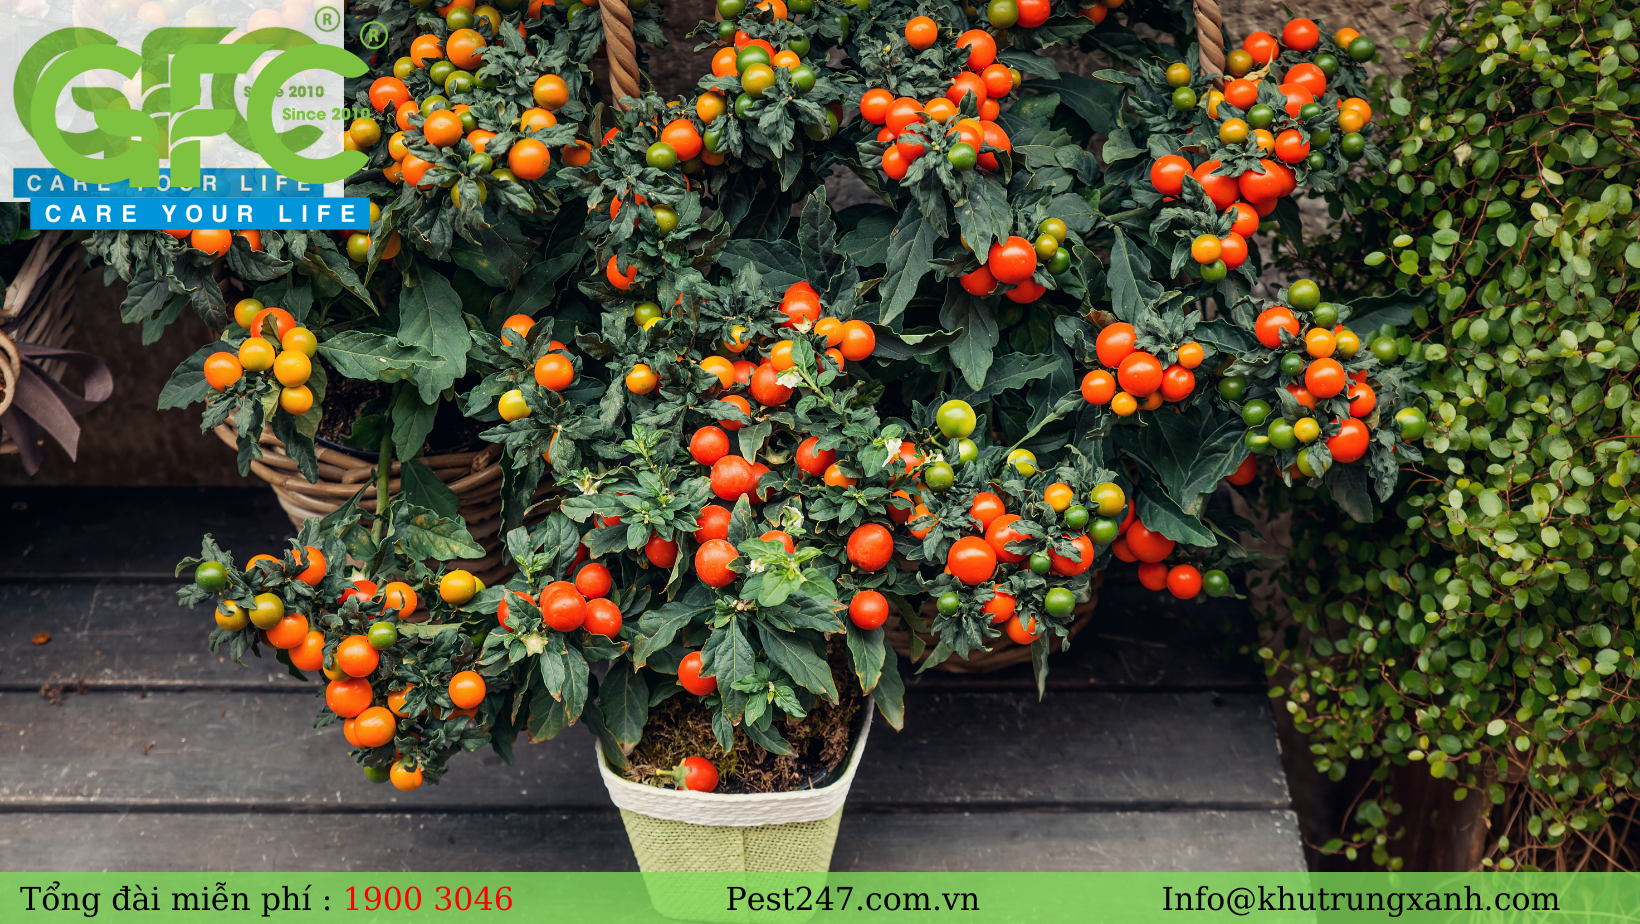 trồng cây cà chua trong nhà cũng cách diệt và phòng chống côn trùng đem lại hiệu quả cao.